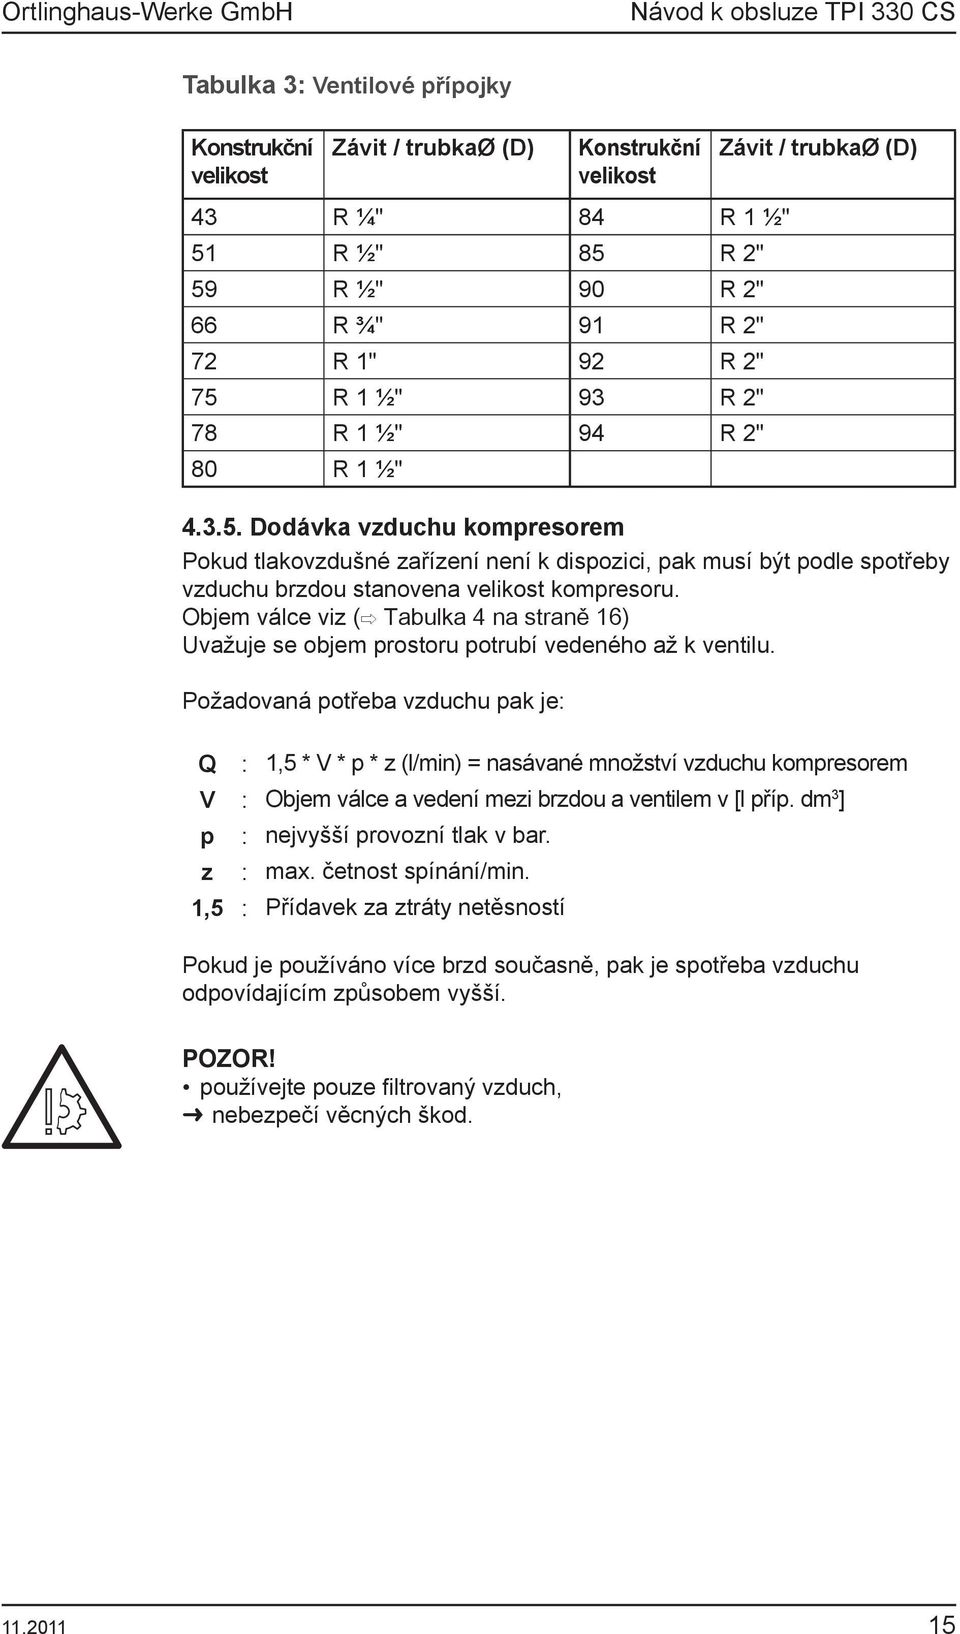 Objem válce viz ( Tabulka 4 na straně 16) Uvažuje se objem prostoru potrubí vedeného až k ventilu.